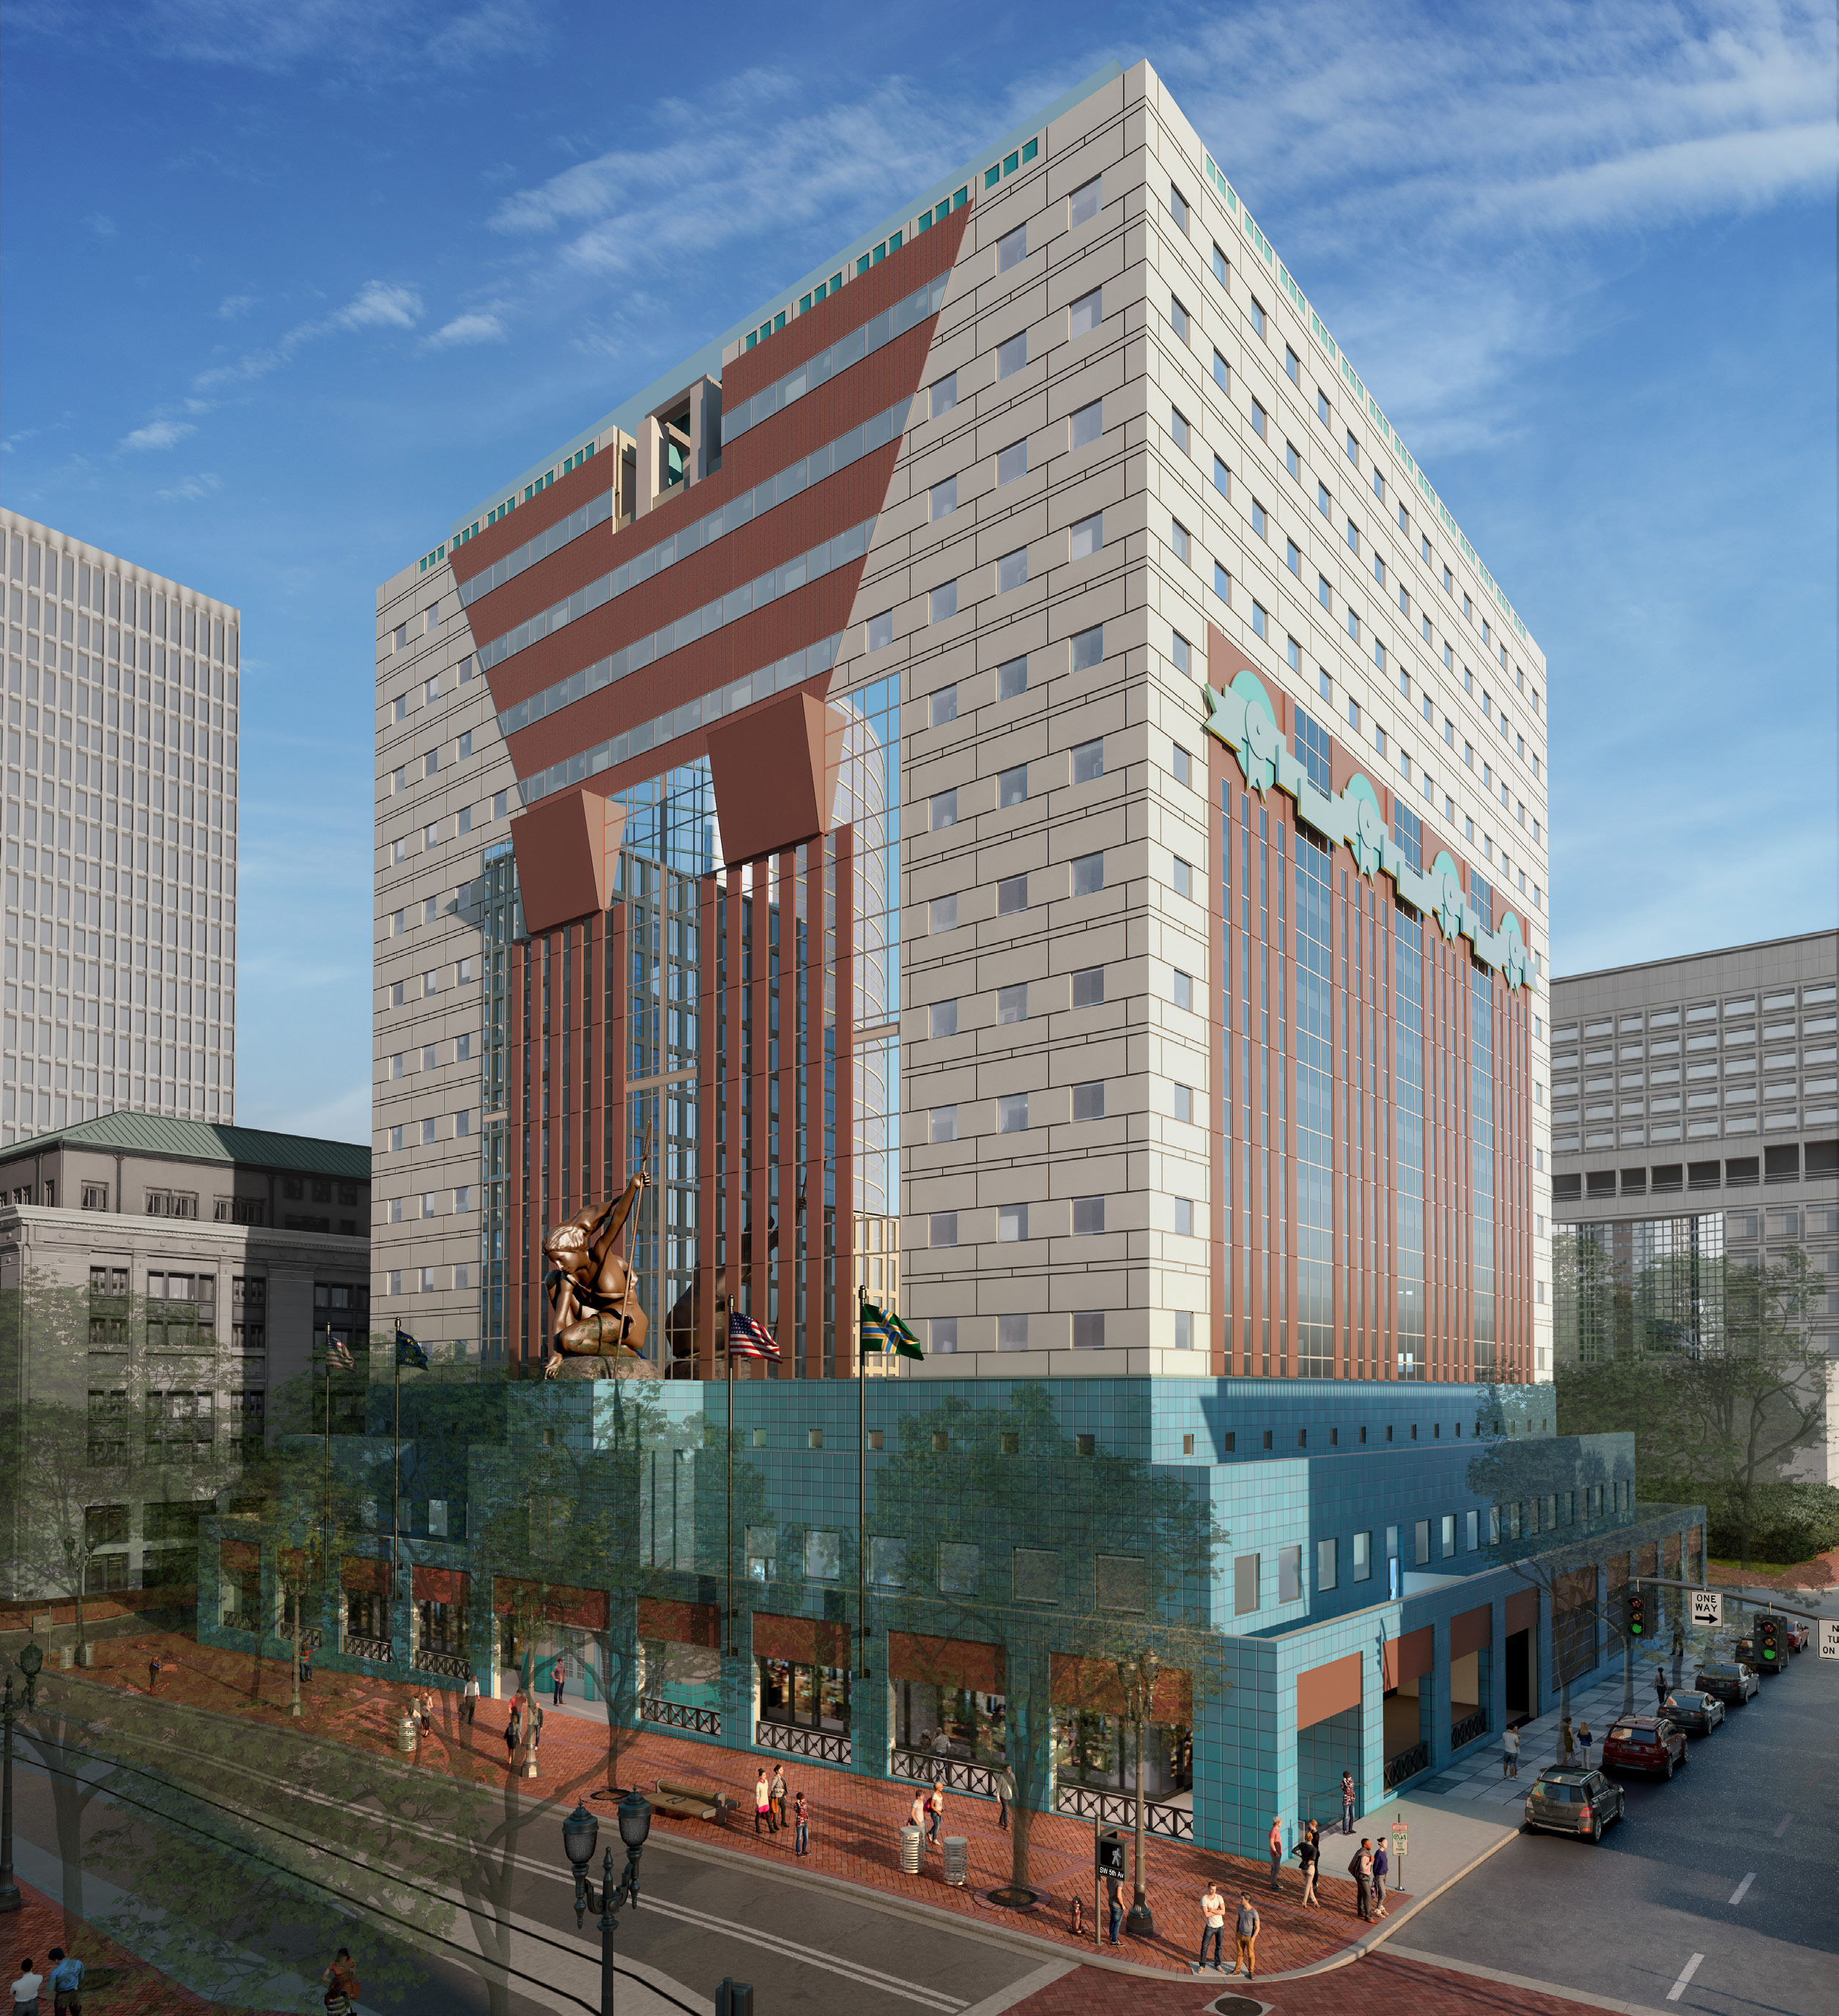 Rebuild of Portland Building Approved (images) - Next Portland